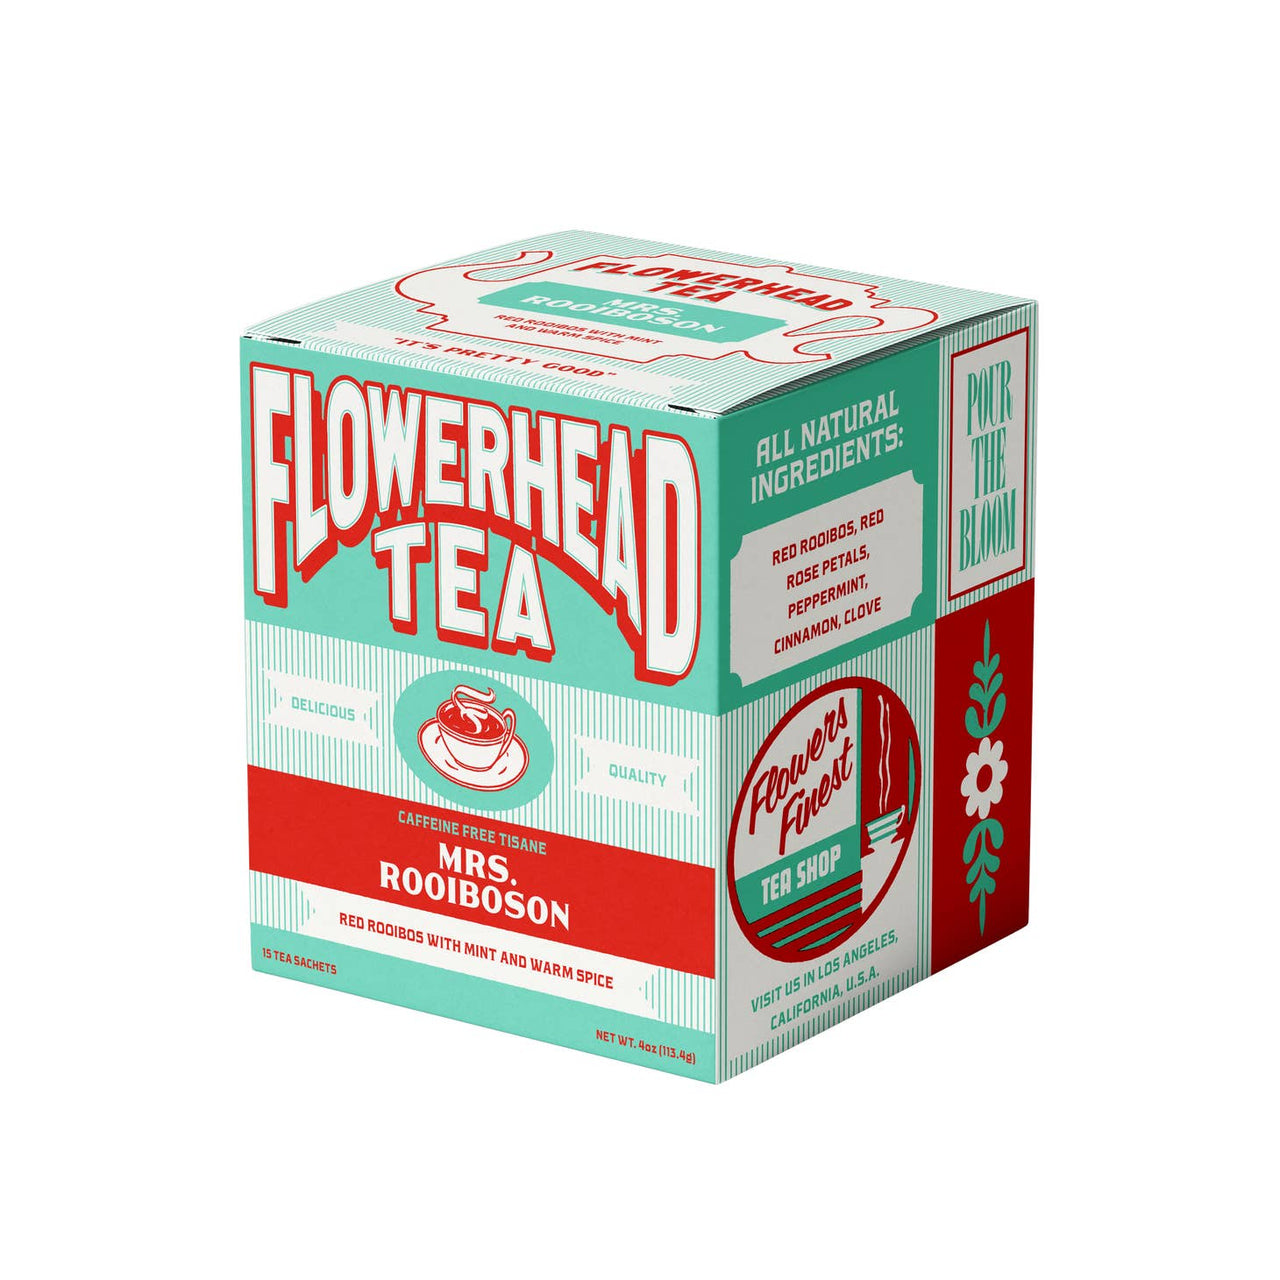 Flowerhead Tea - Mrs. Rooiboson